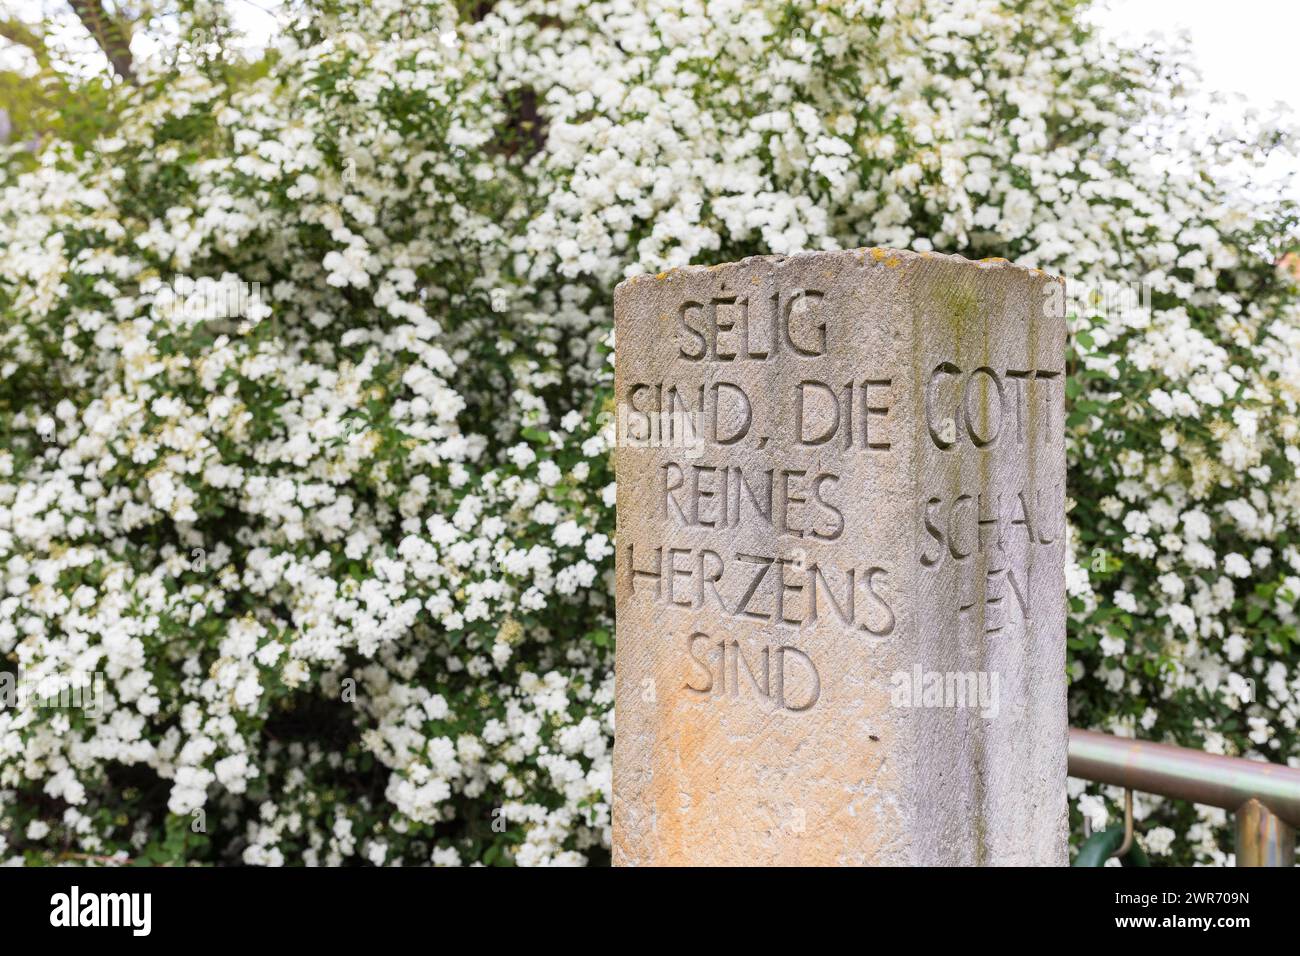 Bibelvers in Sandstein geschrieben, Selig sind, die reines Herzens sind, denn sie werden Gott schauen, auf dem Trinitatisfriedhof in Riesa, Sachsen, D Stock Photo